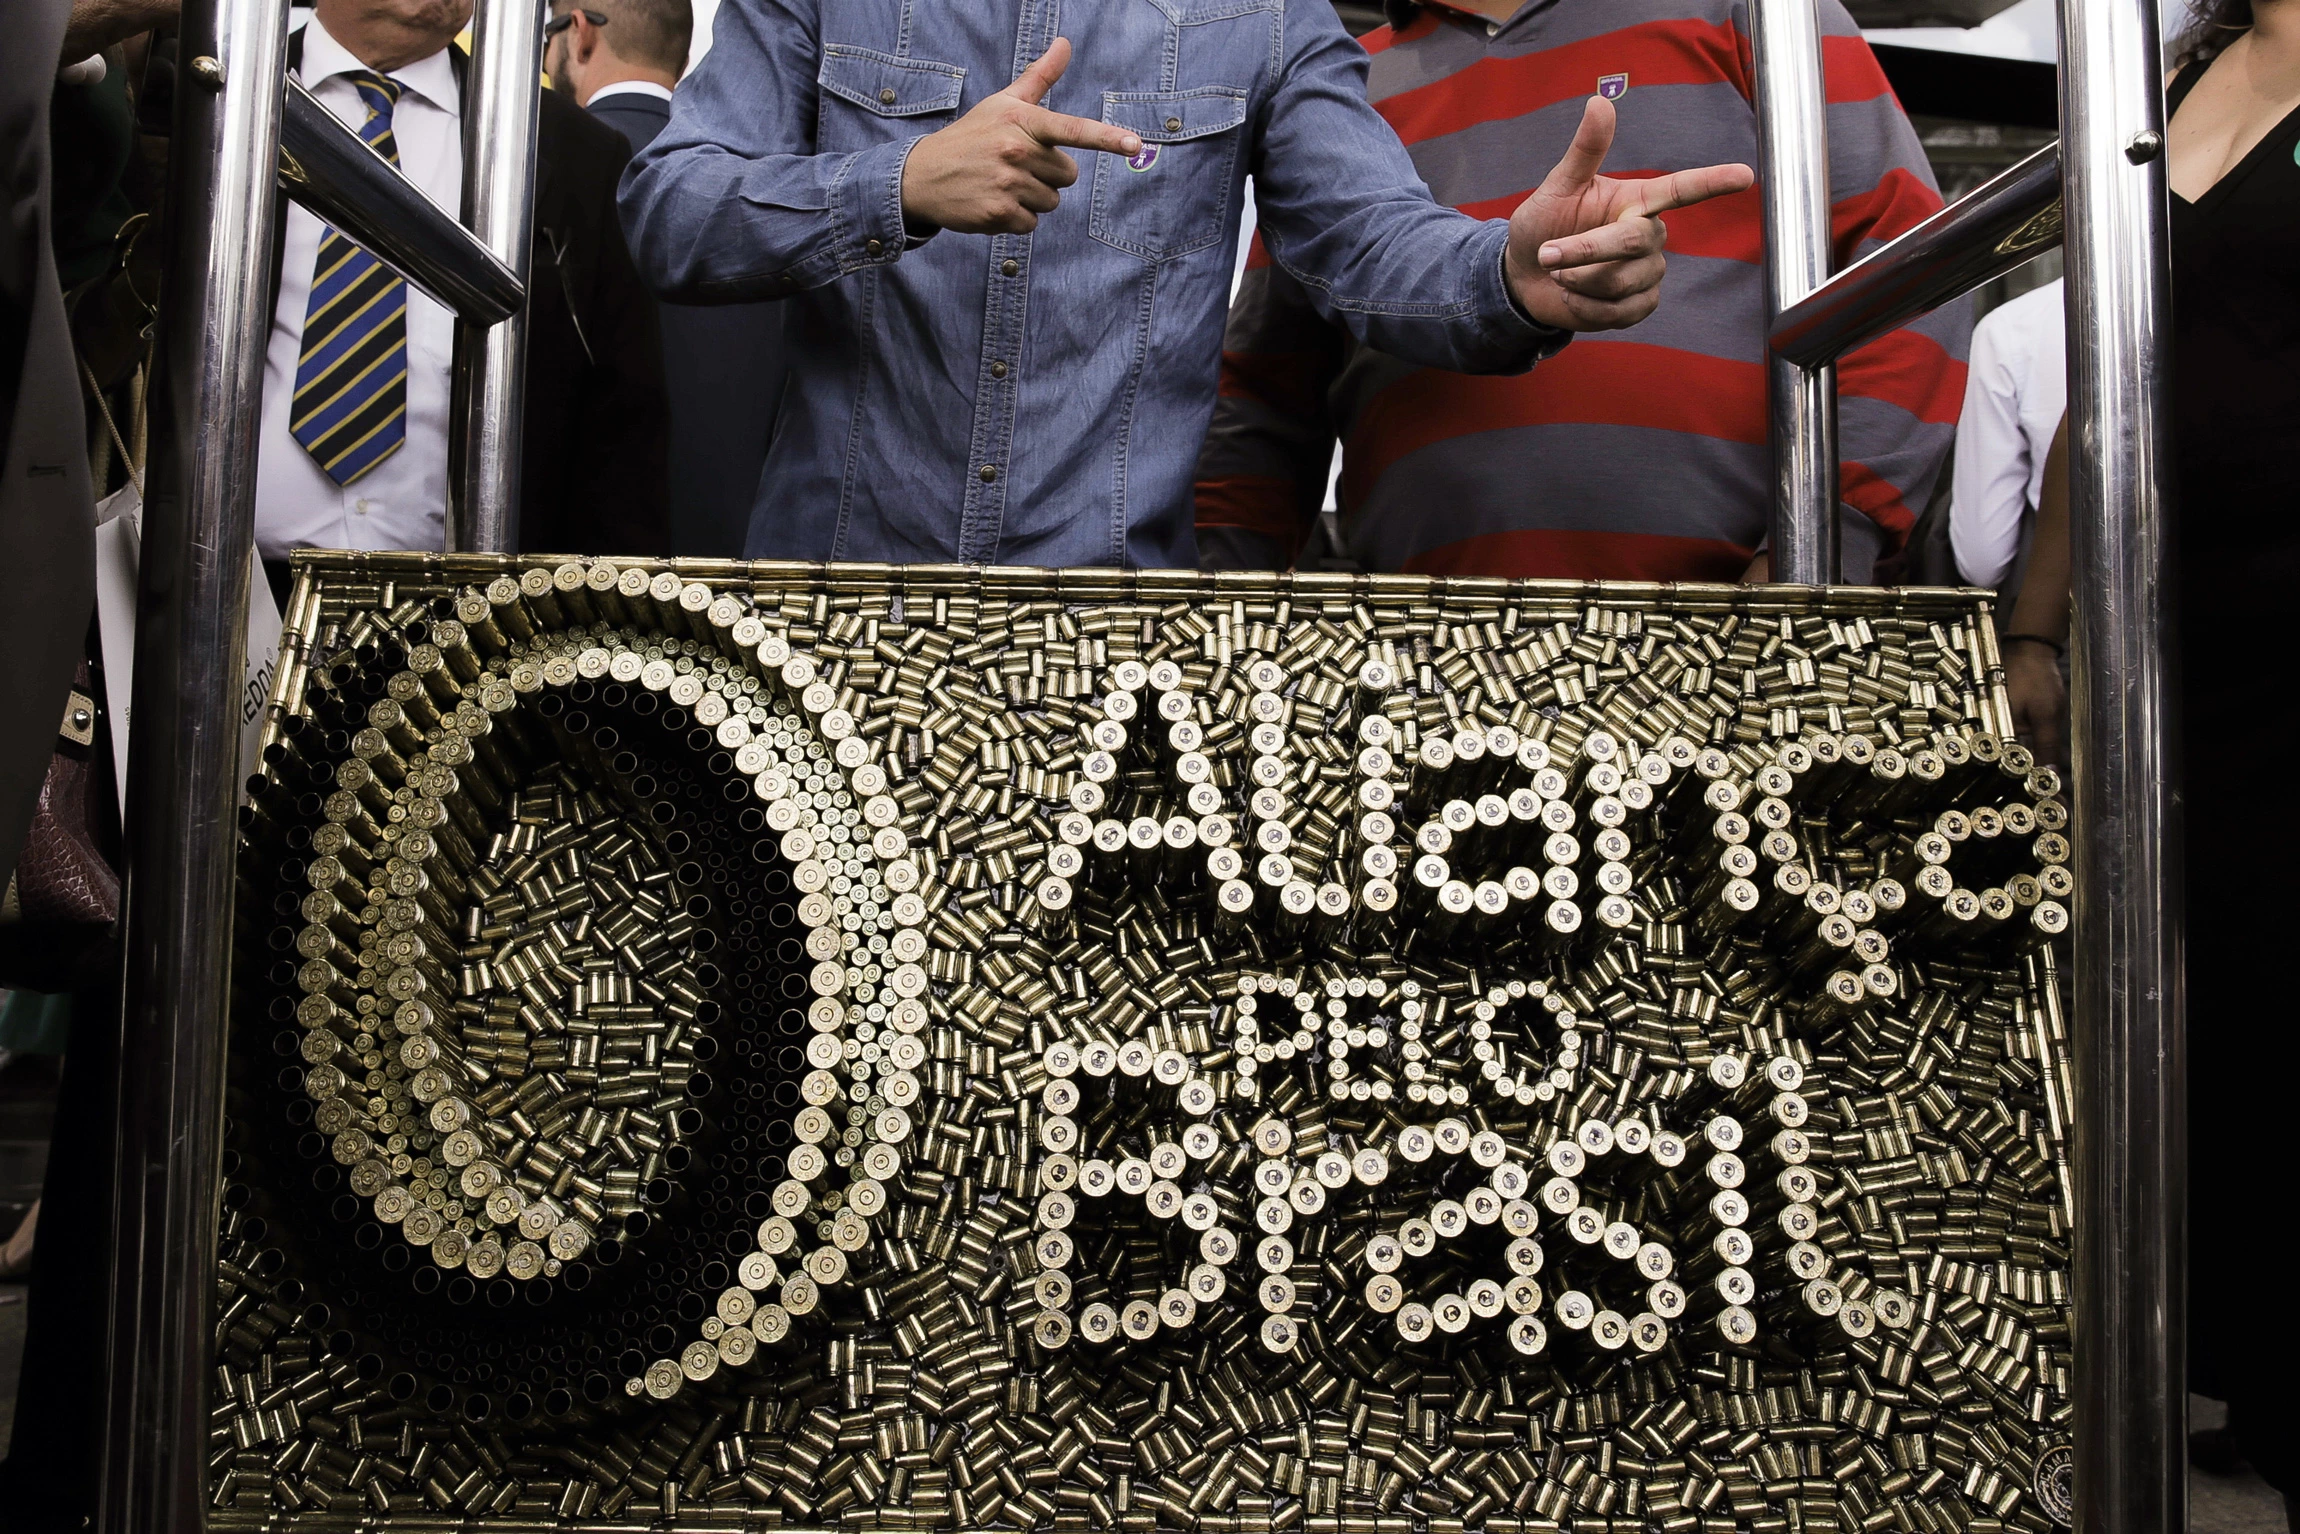 Apoiadores posam para fotos com uma obra com o nome e símbolo do partido Aliança pelo Brasil, feito com cartuchos de balas.